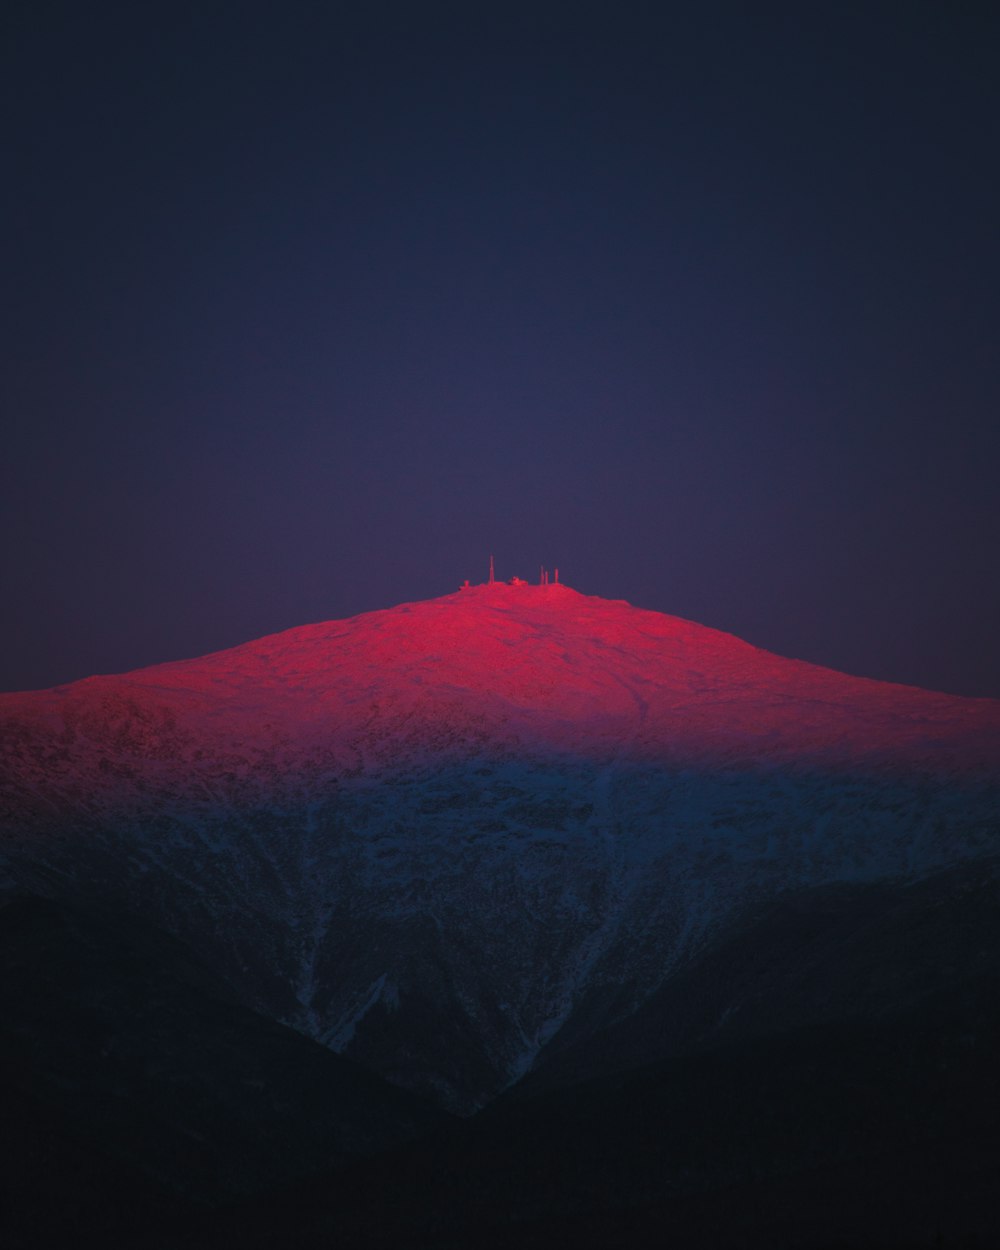 その上に赤い光が灯った山